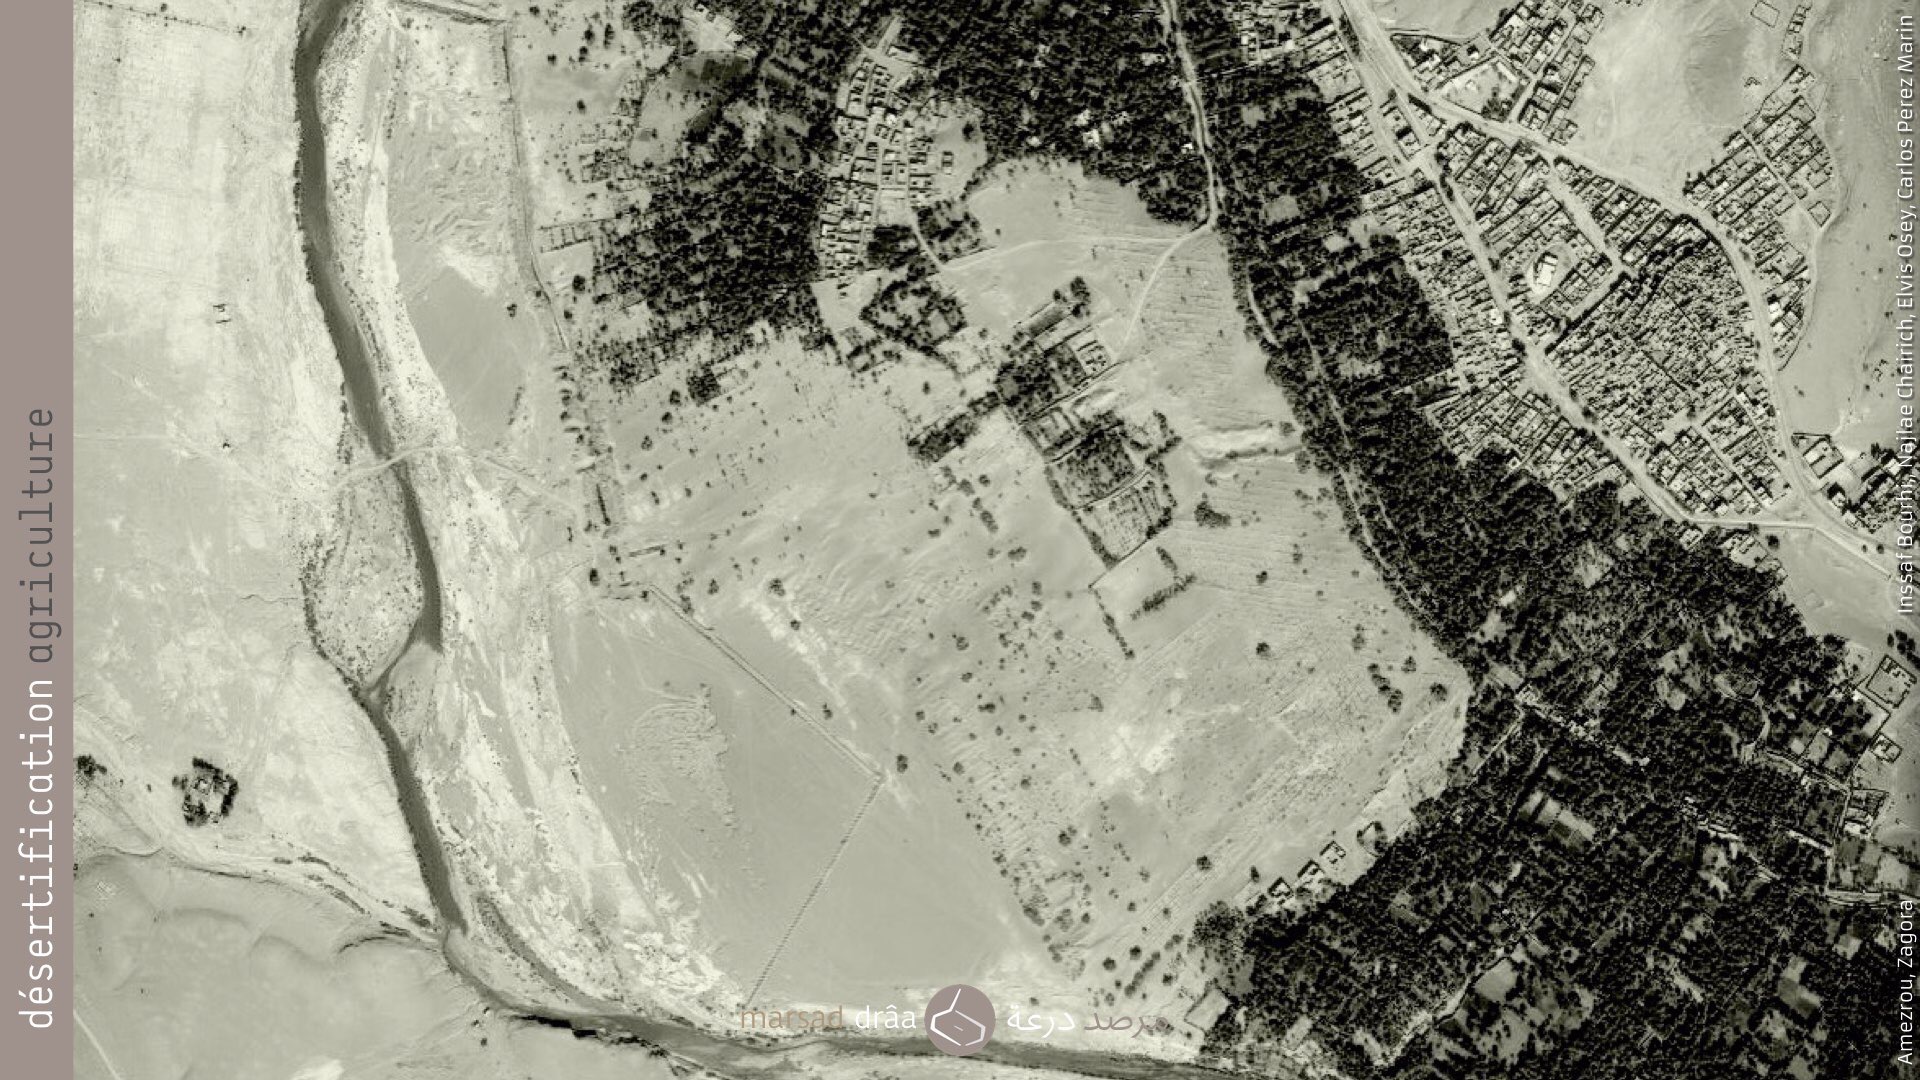   16. Projet qui se situe dans la palmerai de Fezouata, près d'Amezrou (Zagora), où la palmeraie est sur le point d'être coupée en deux à cause du sable.  